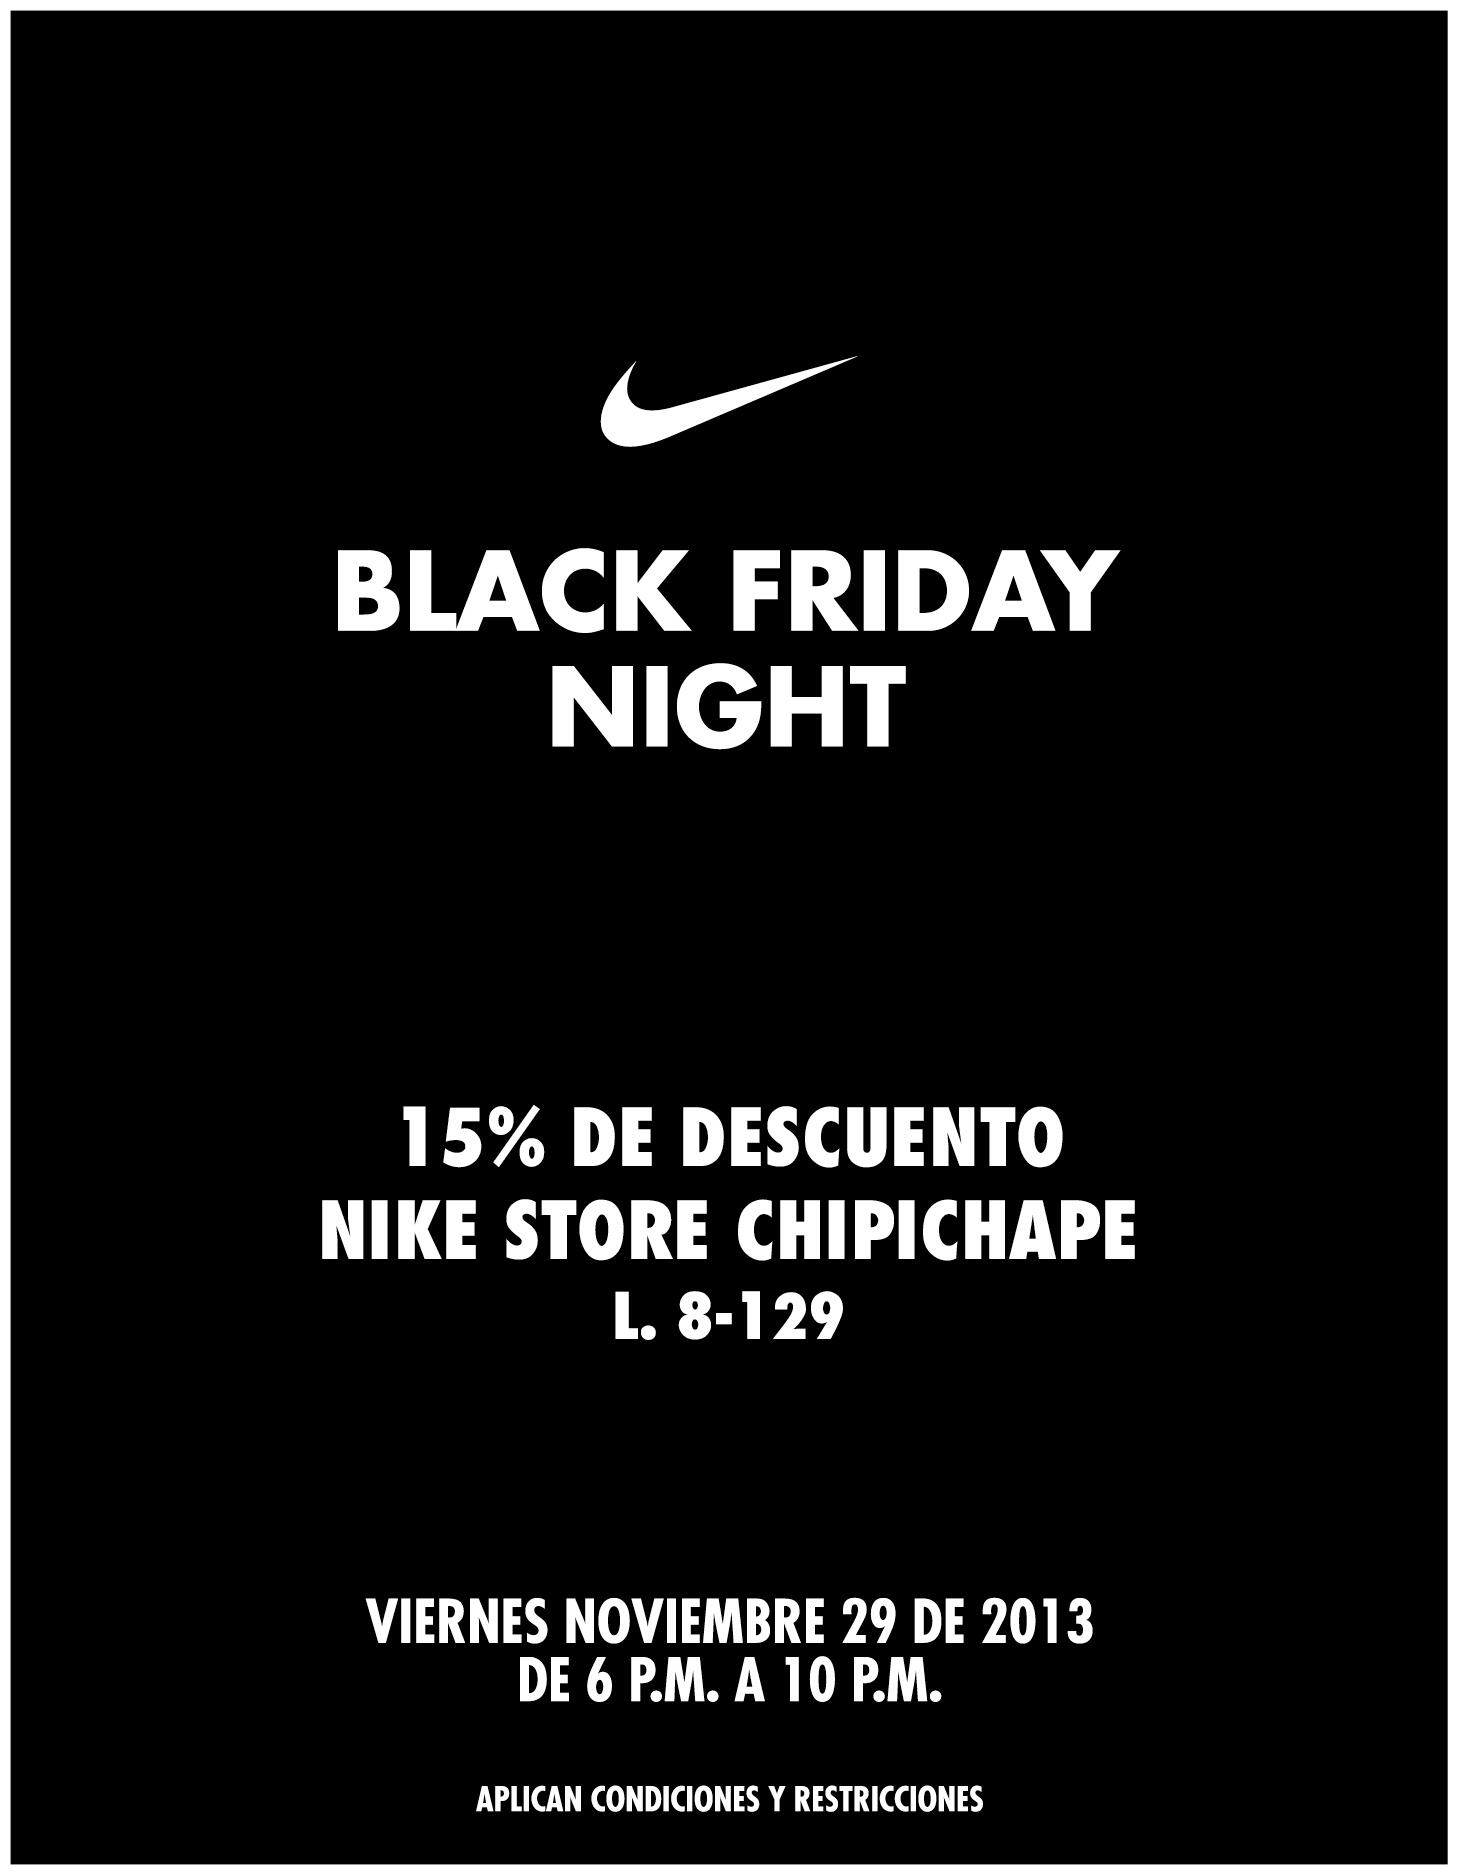 CHIPICHAPE в Twitter: „NIKE BLACK FRIDAY NIGHT 15% de descuento nike store chipichape 8 Viernes de Noviembre 6 P.M a 10 PM http://t.co/BnTT2AUpR3“ / Twitter